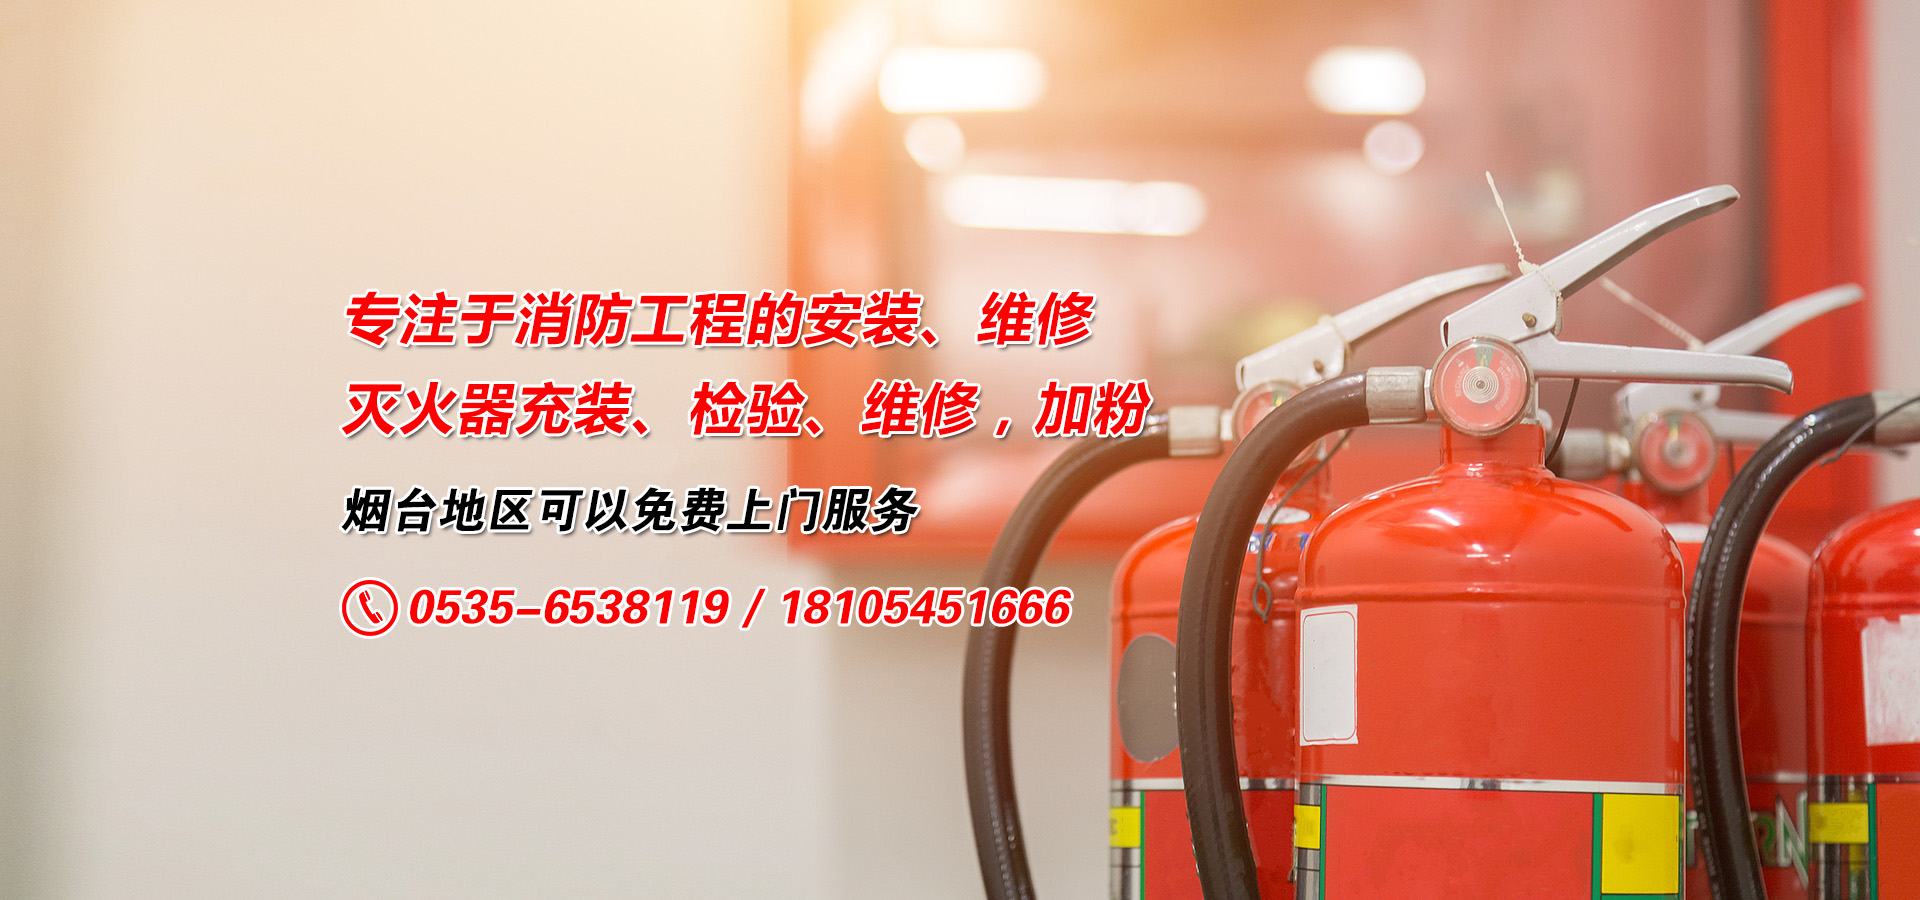 鑫瀾消防專注于消防器材維修、滅火器維修等服務